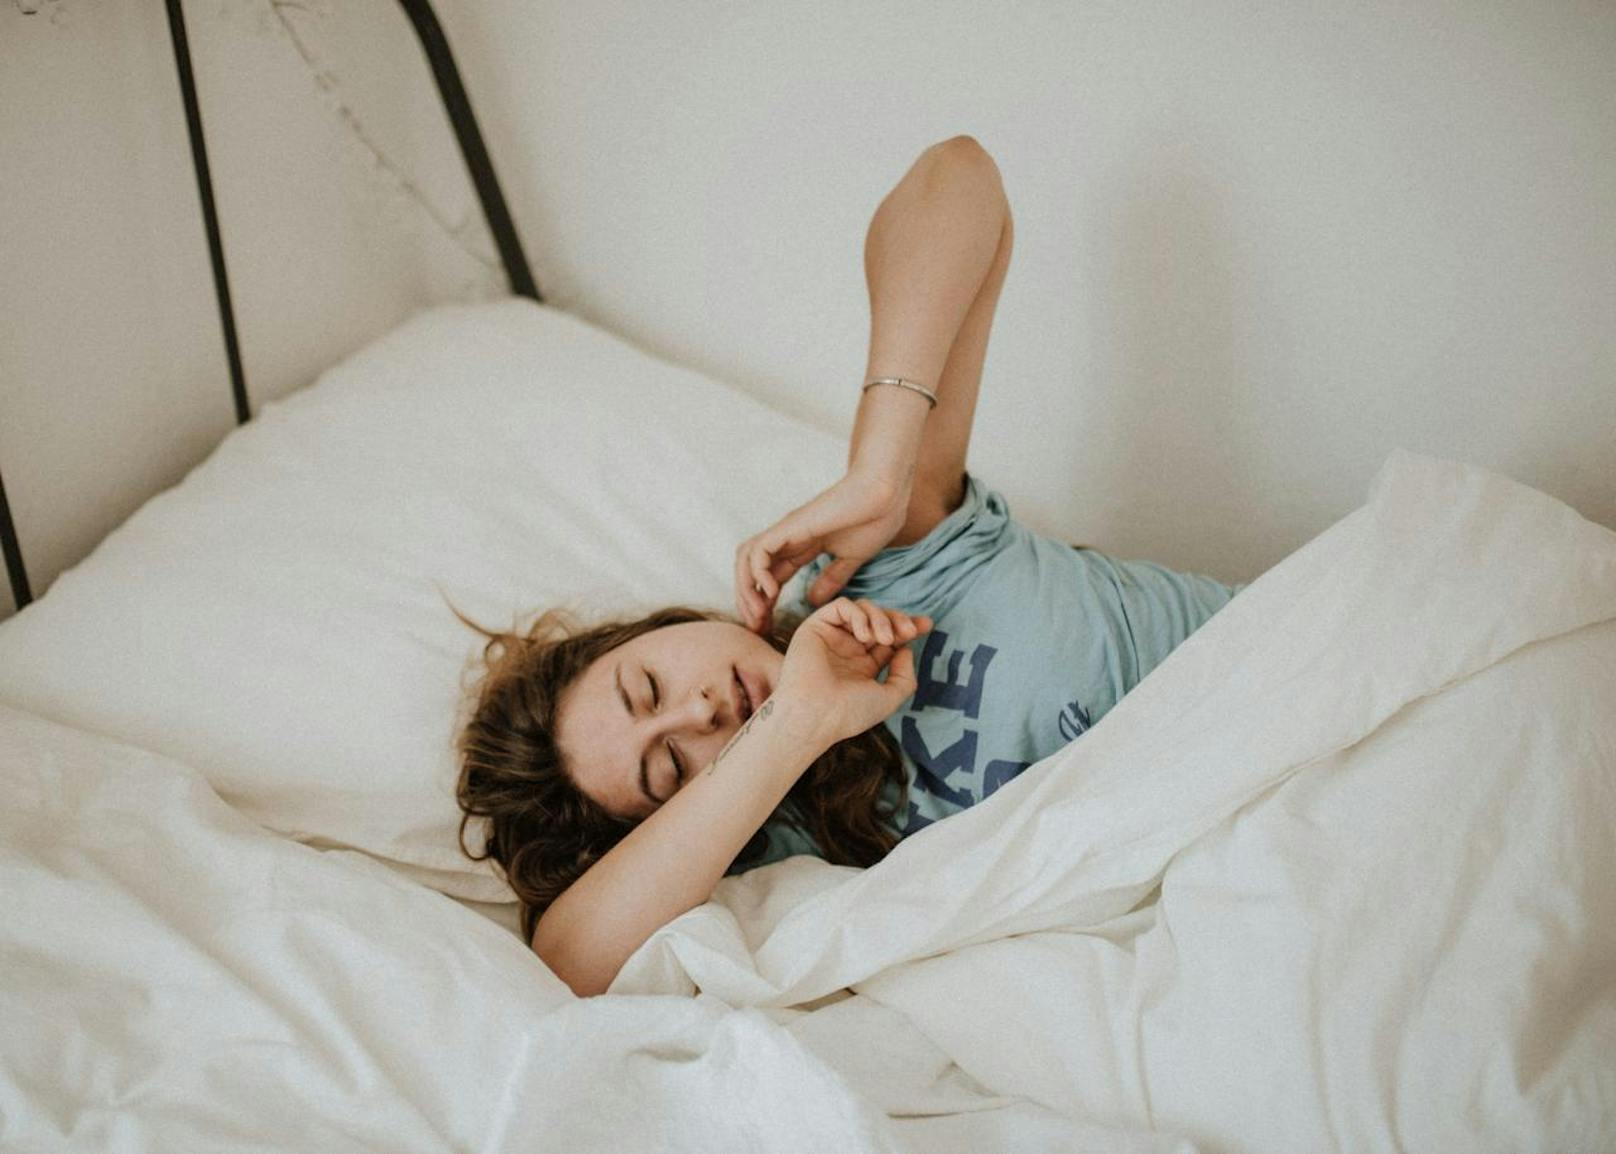 <b>3. Du schläfst in einem unregelmäßigen Rhythmus</b>
Laut Studien haben Schichtarbeiter ein höheres Risiko für Herz-Kreislauf-Probleme, Bluthochdruck und andere Krankheiten als Menschen, die einen regelmäßigen Schlafrhythmus haben.